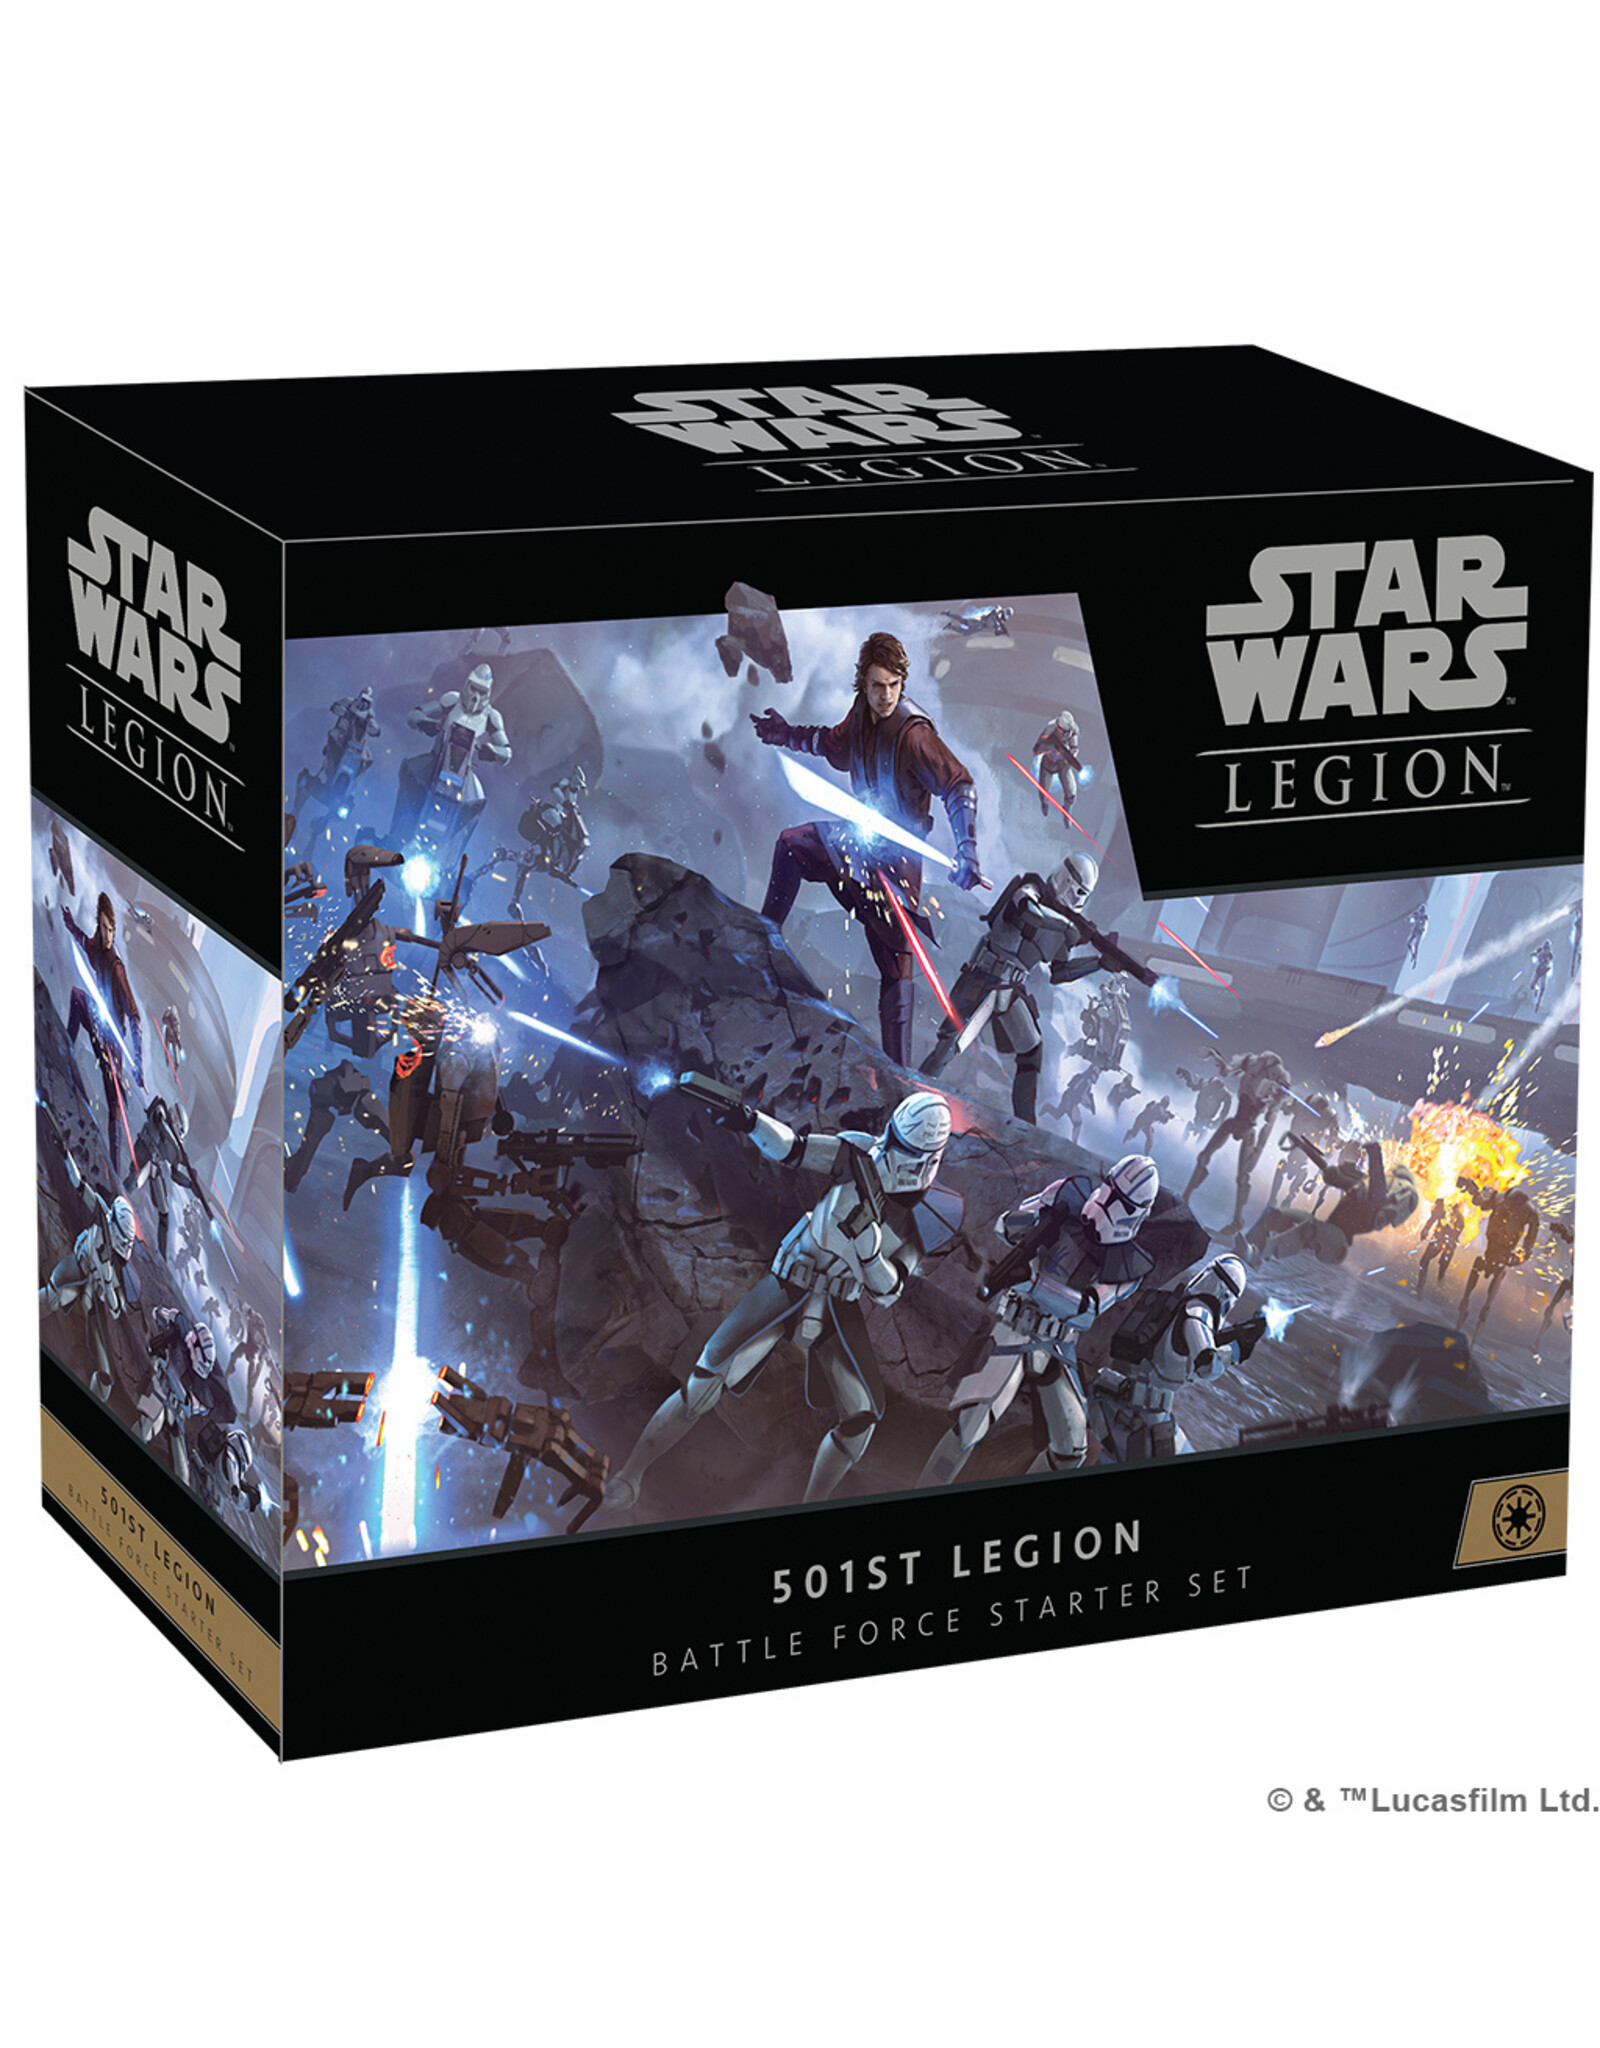 STAR WARS LEGION Star Wars Legion 501ST Legion Battle Force Starter Set